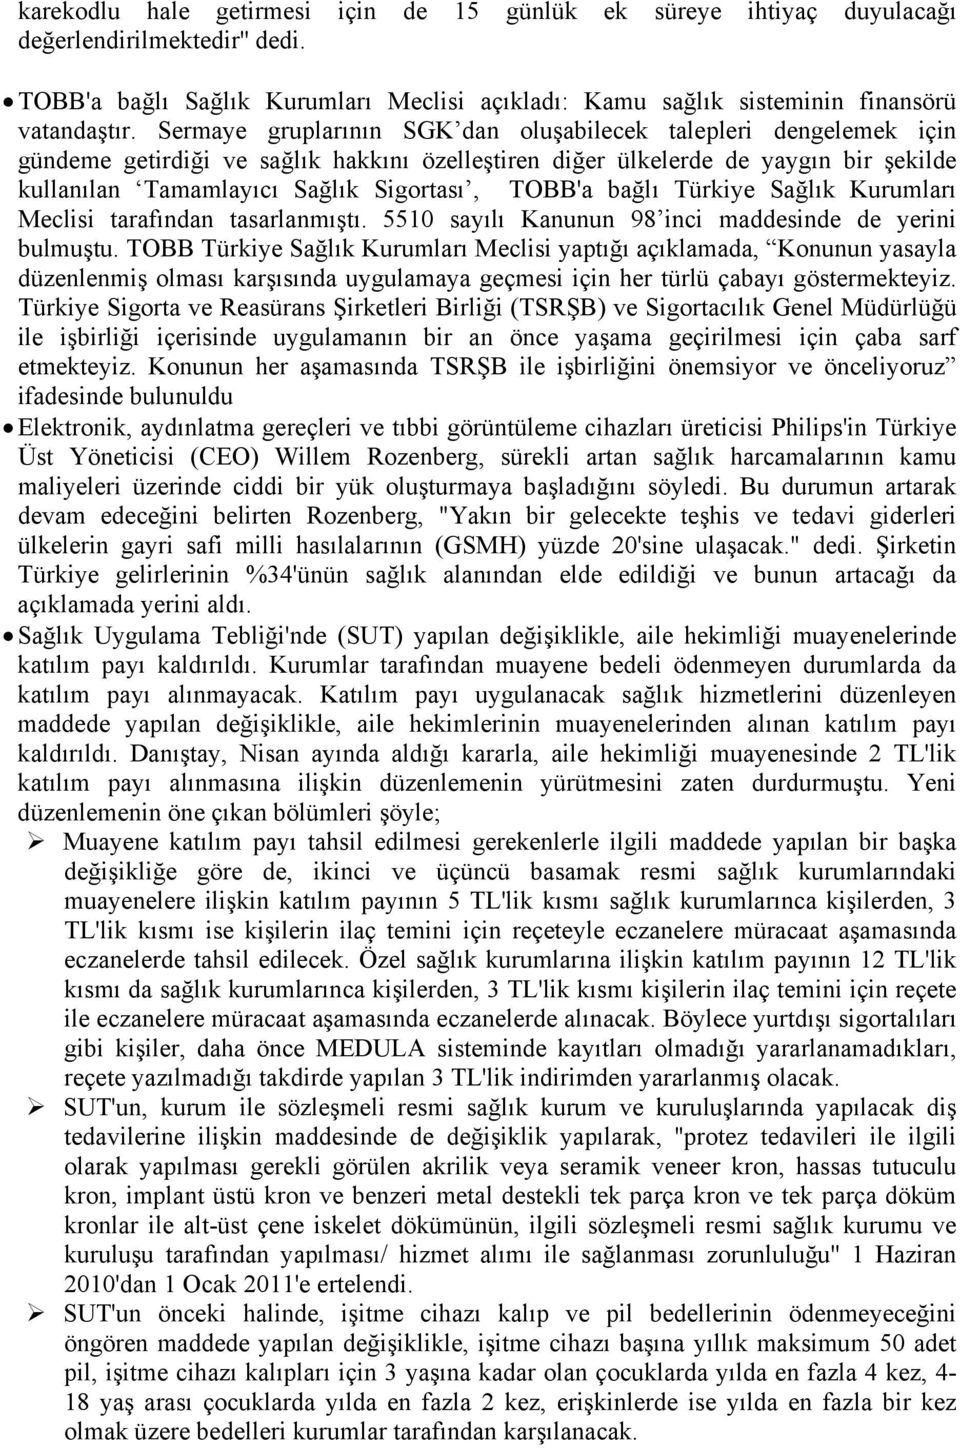 TOBB'a bağlı Türkiye Sağlık Kurumları Meclisi tarafından tasarlanmıştı. 5510 sayılı Kanunun 98 inci maddesinde de yerini bulmuştu.